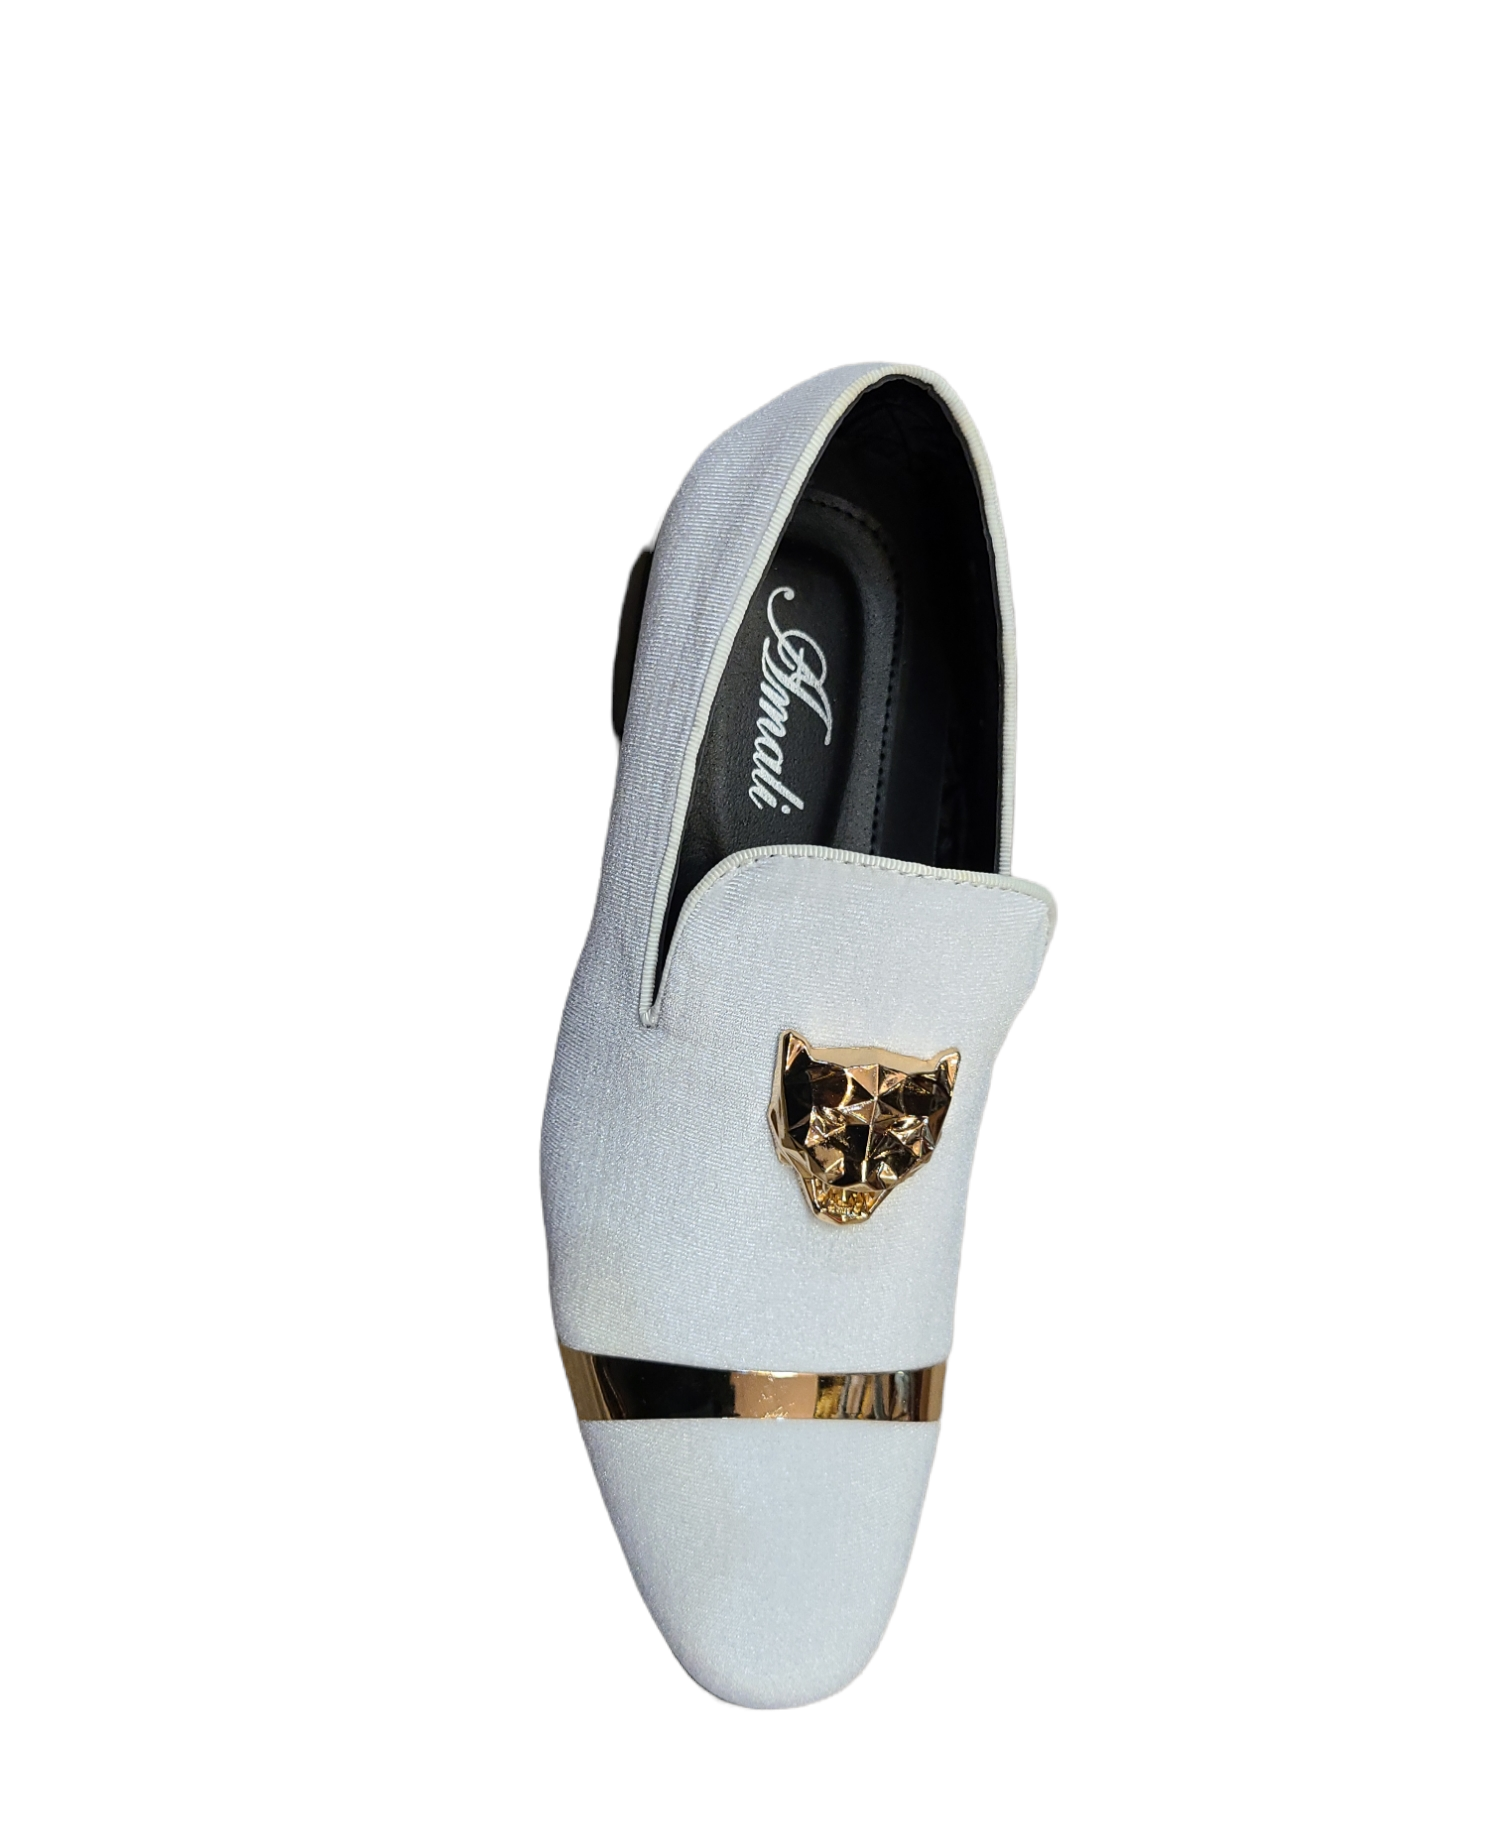 Amali Slip on Lion Emblem Shoes